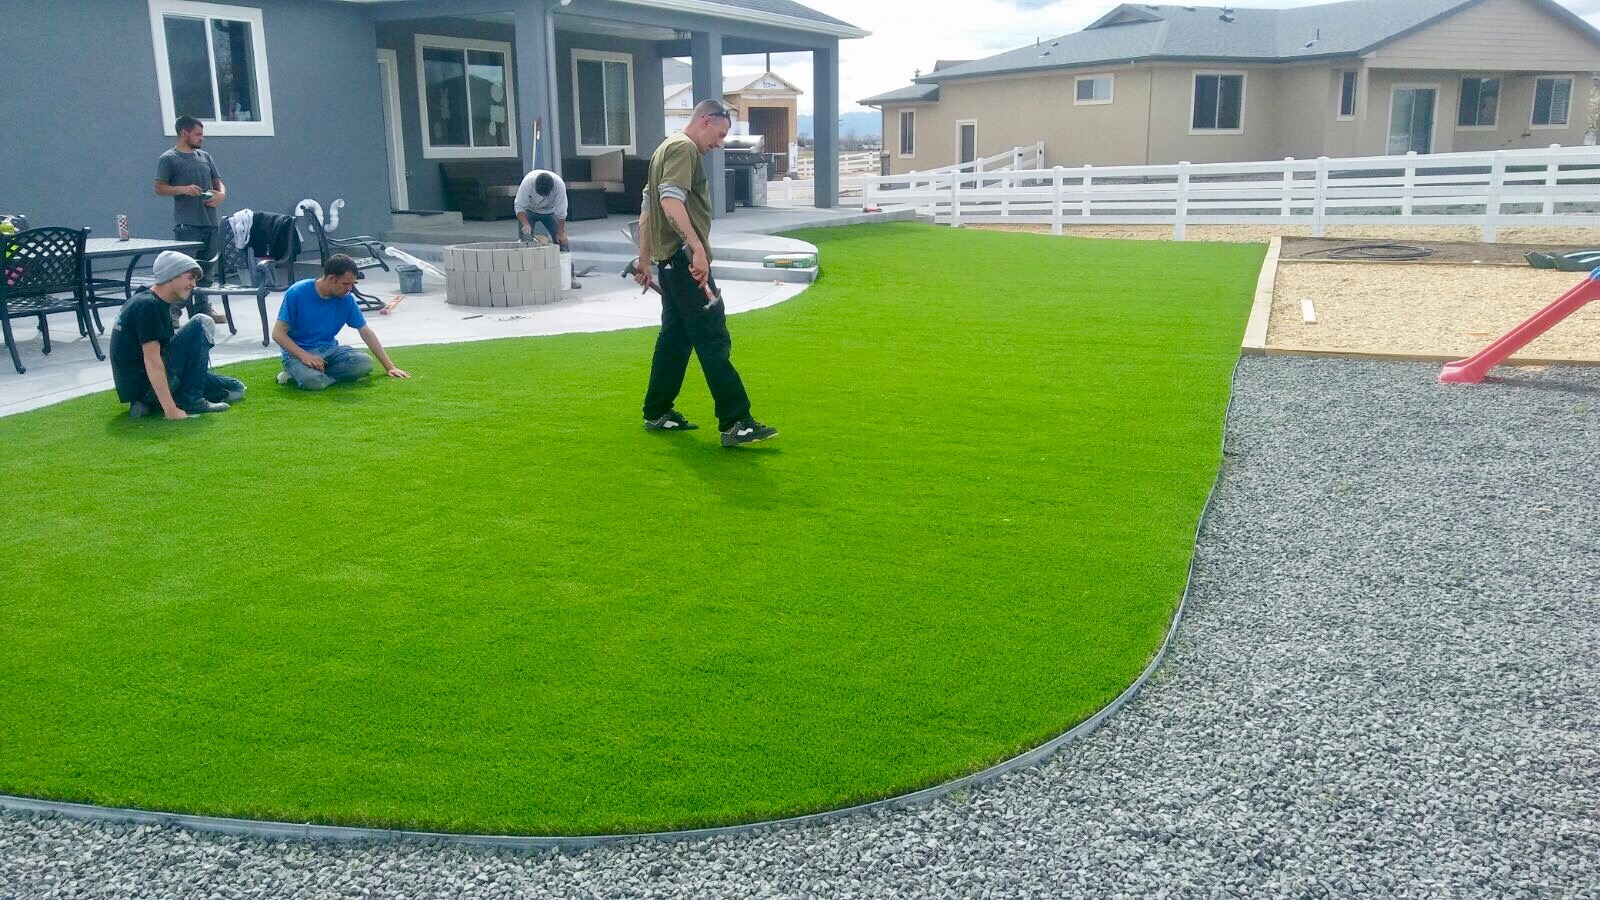 install artificial grass